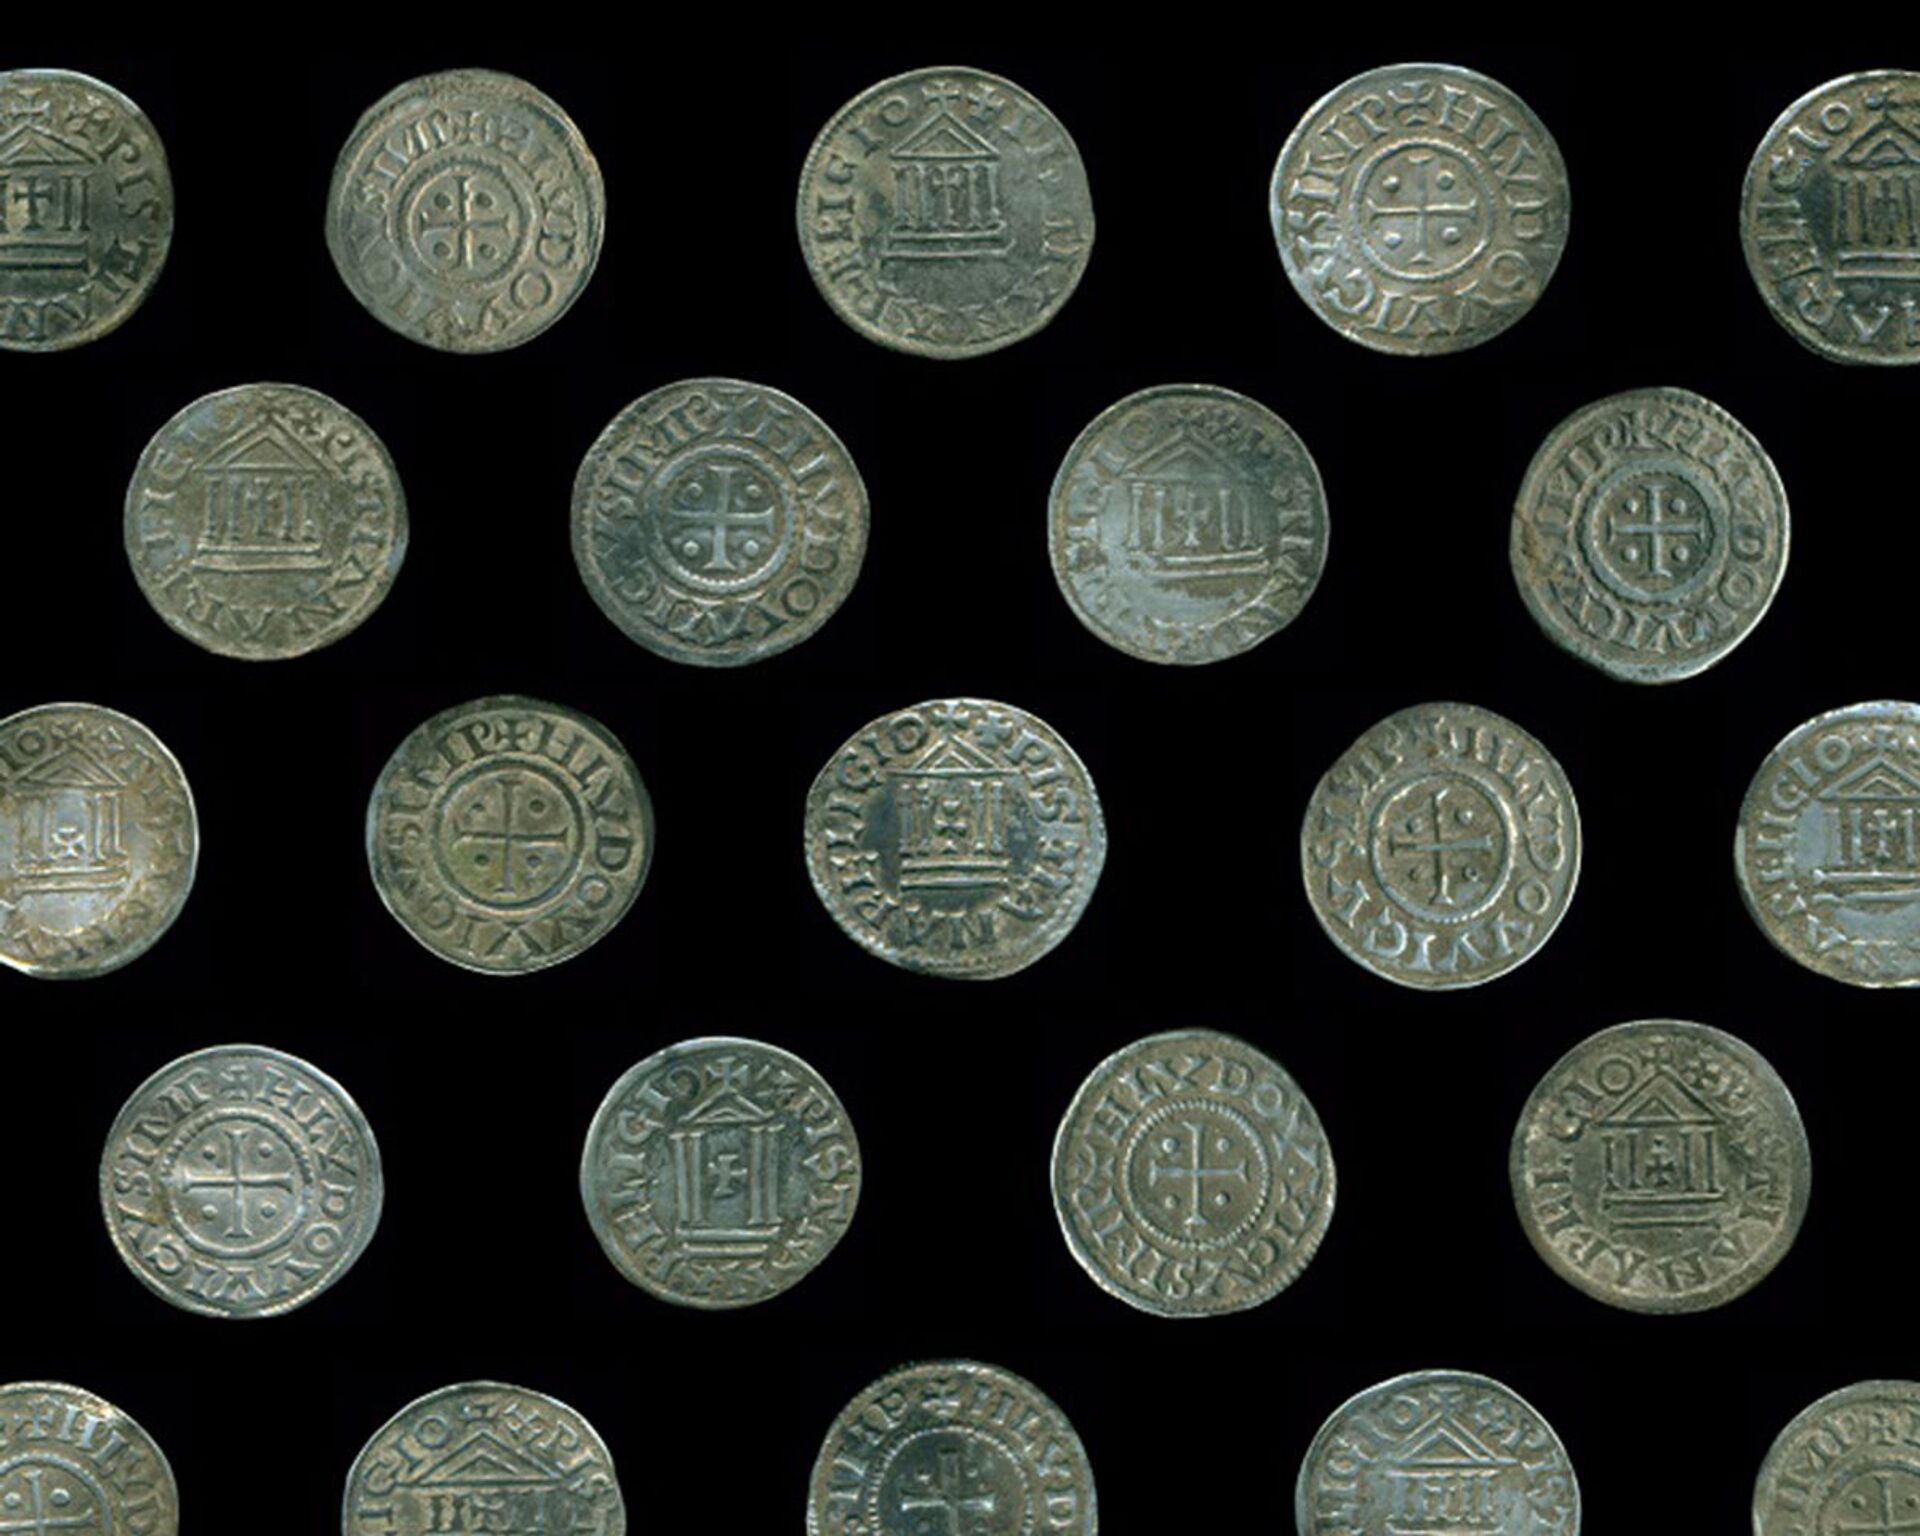 Tesouro de moedas carolíngias do século IX descoberto na Polônia (FOTO)  - Sputnik Brasil, 1920, 09.05.2021